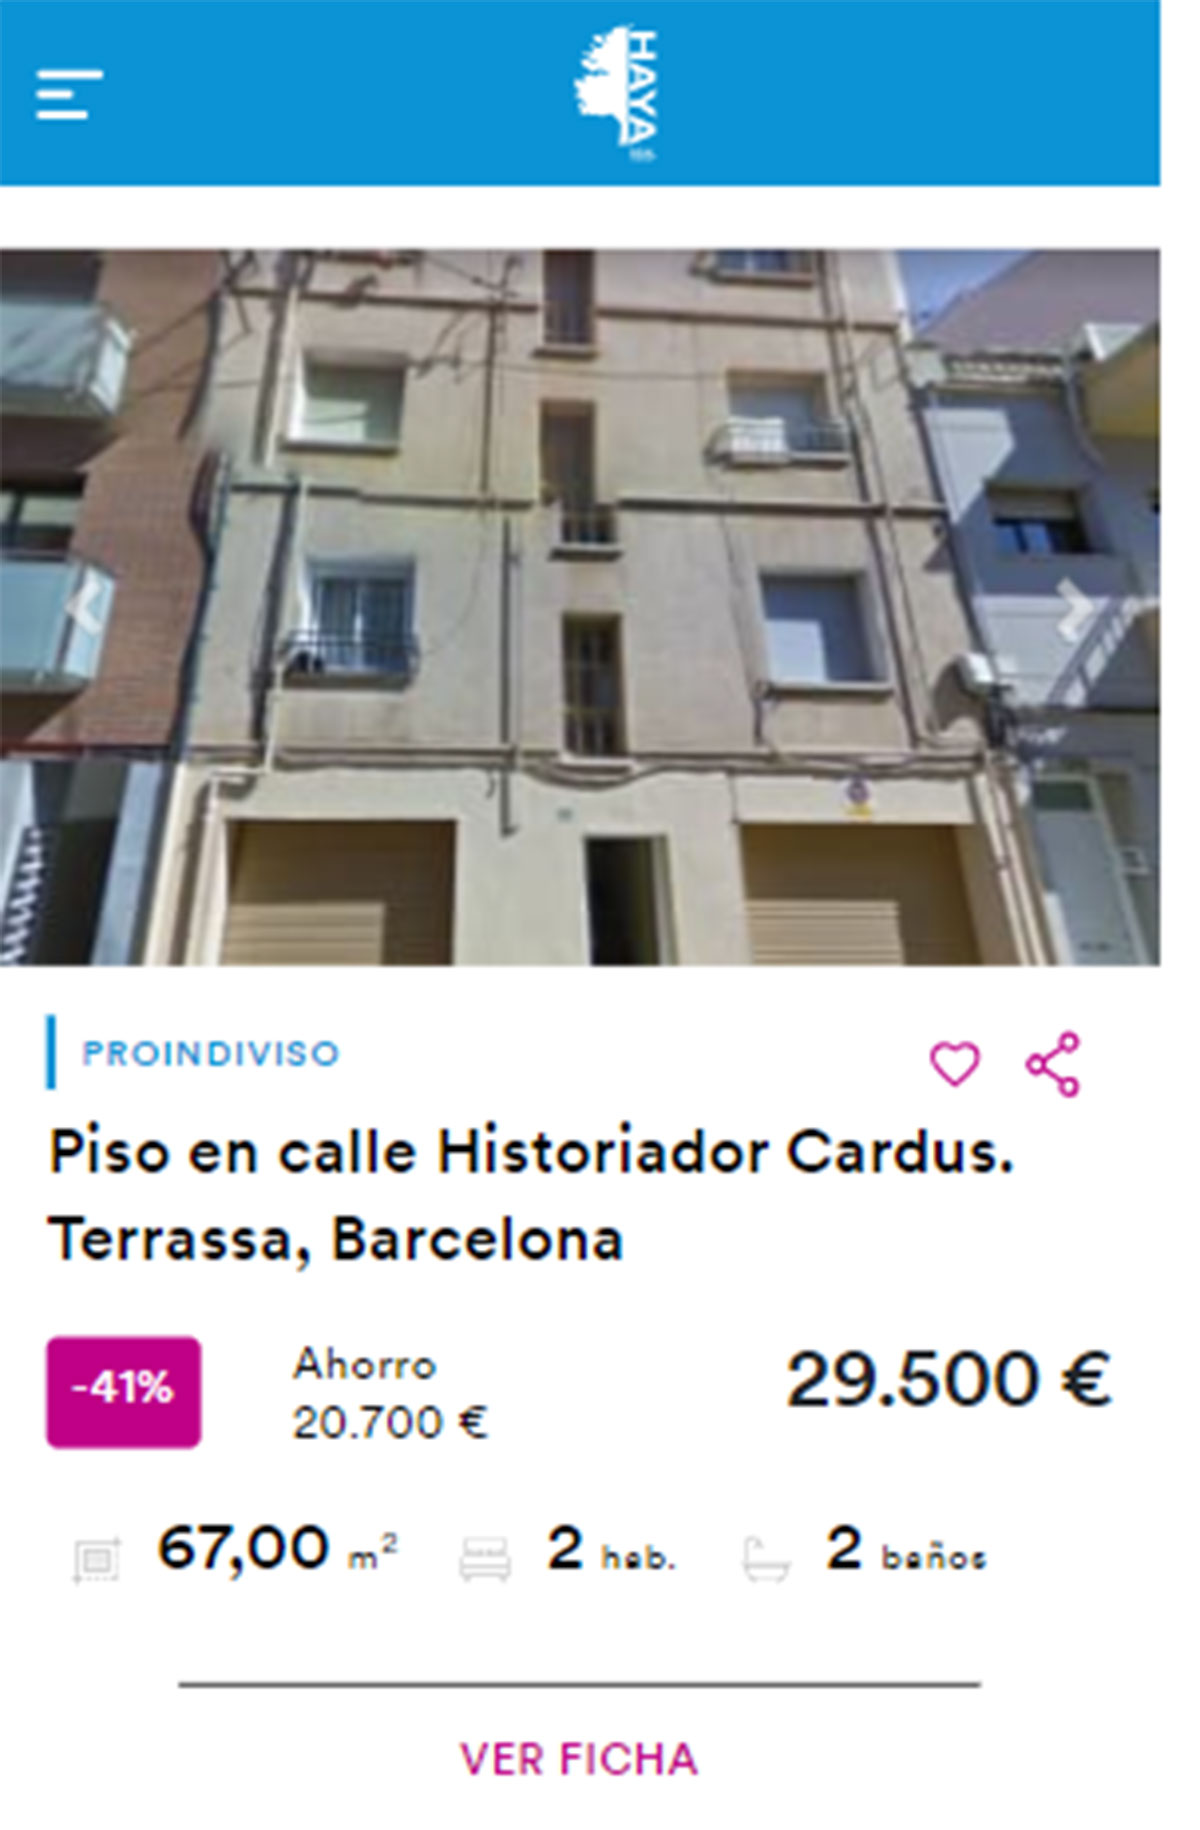 Piso en Barcelona por 29.500 euros